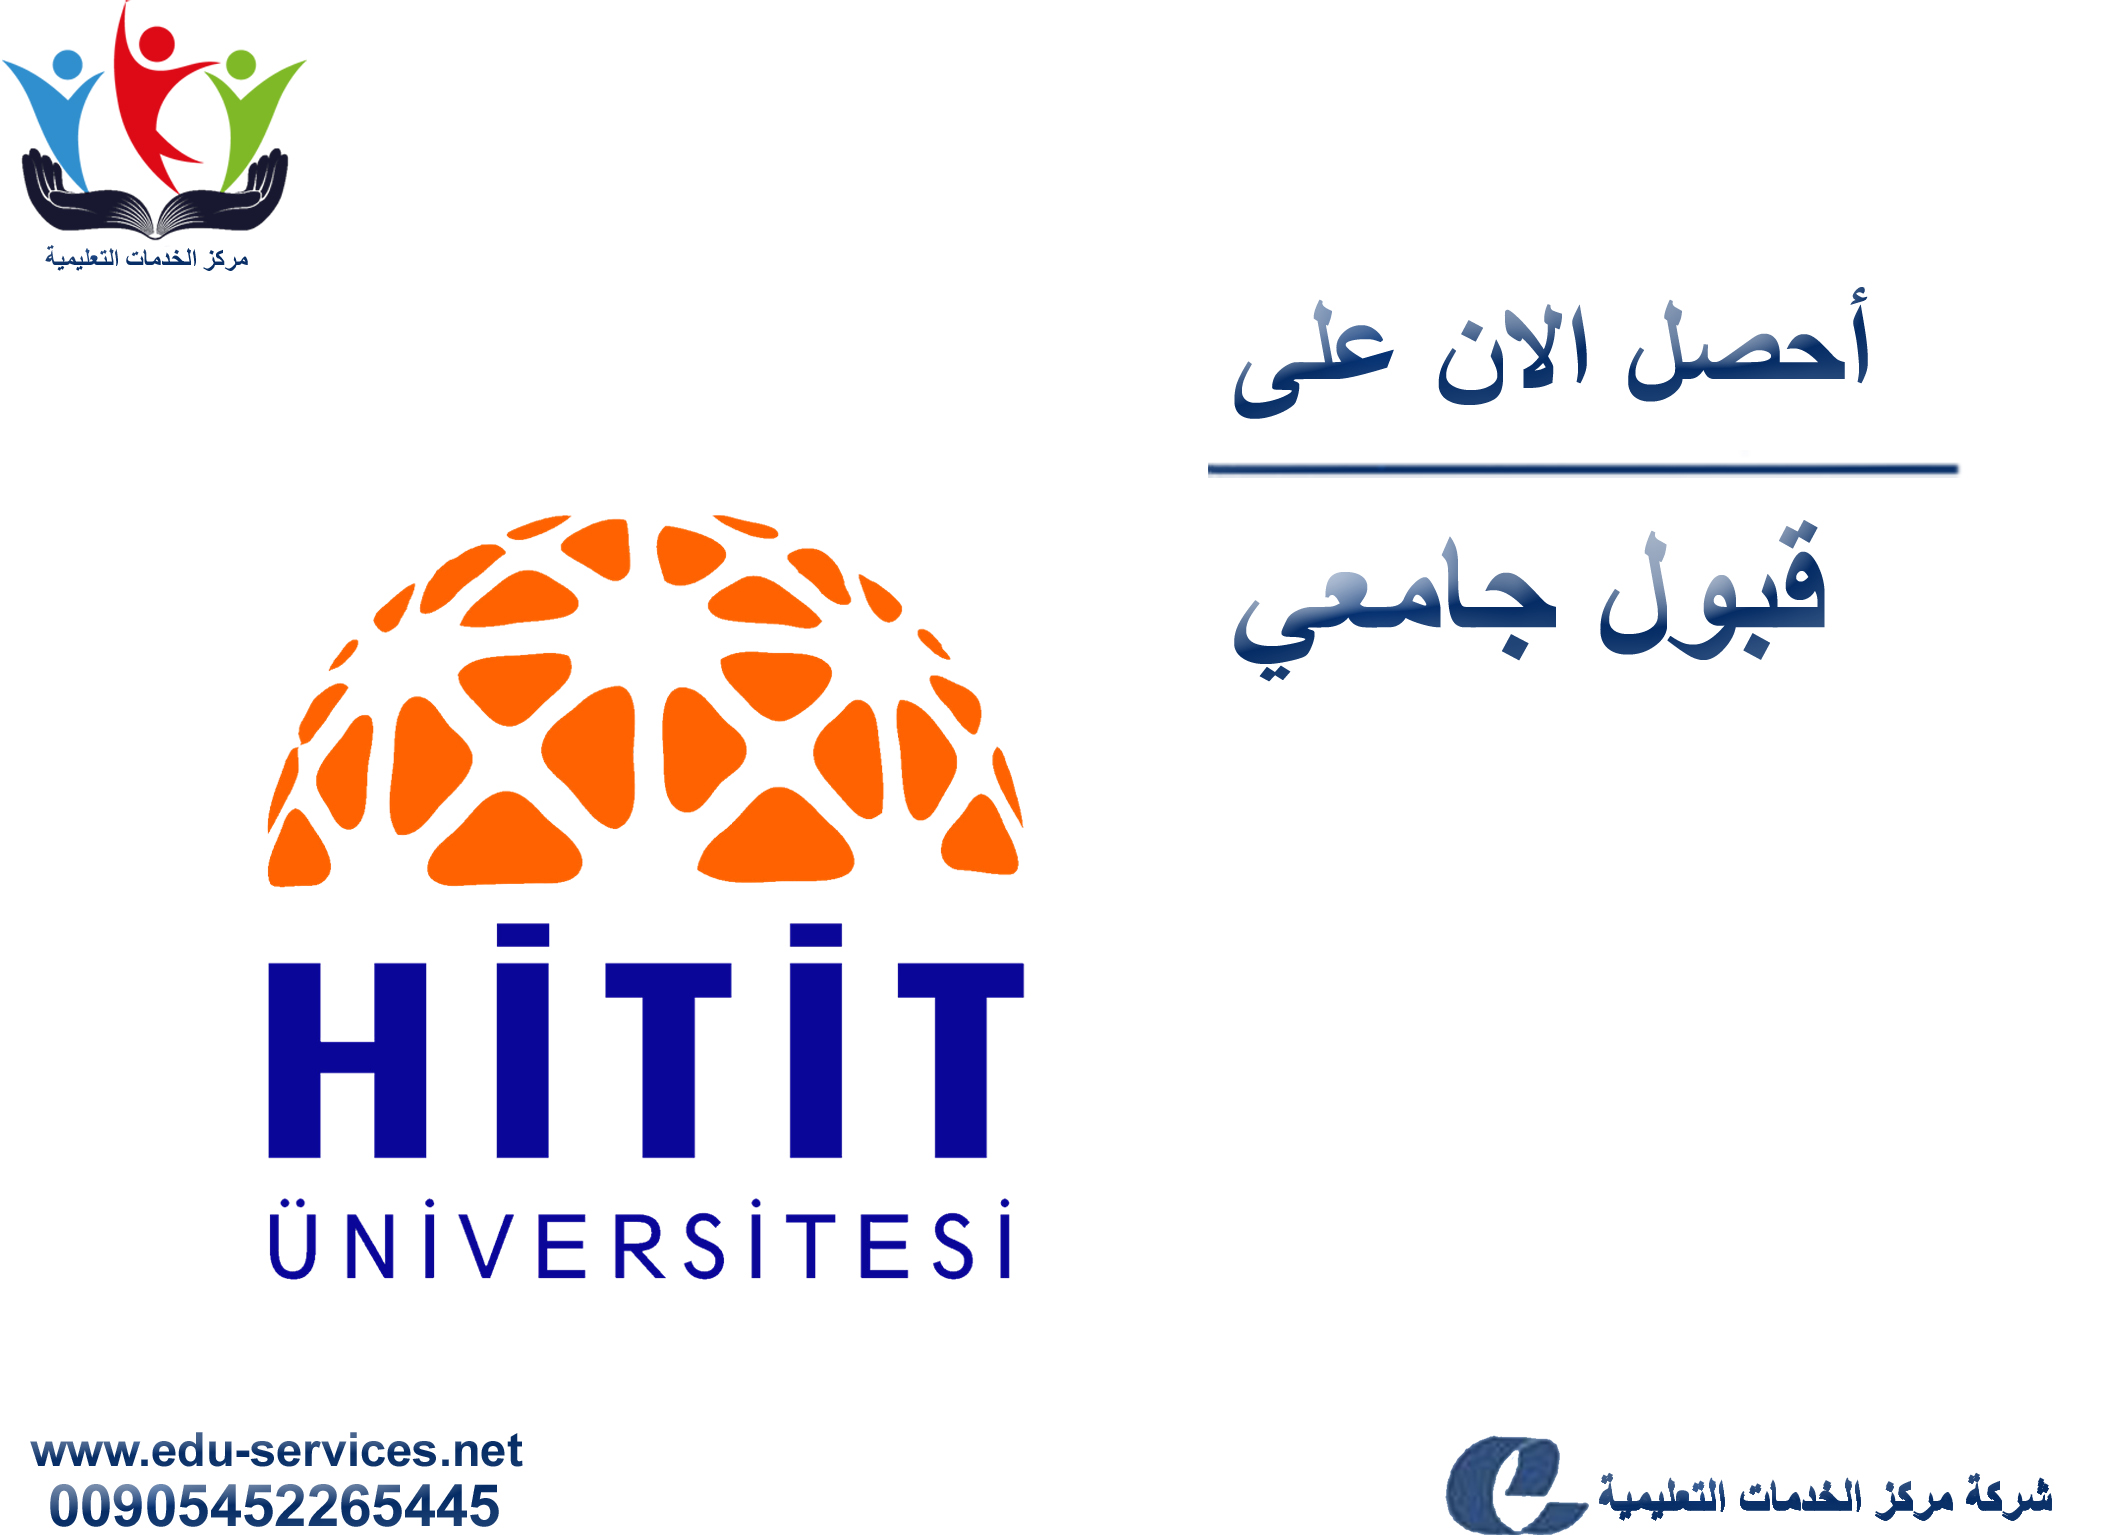 افتتاح التسجيل في جامعة هيتيت للعام 2018-2019